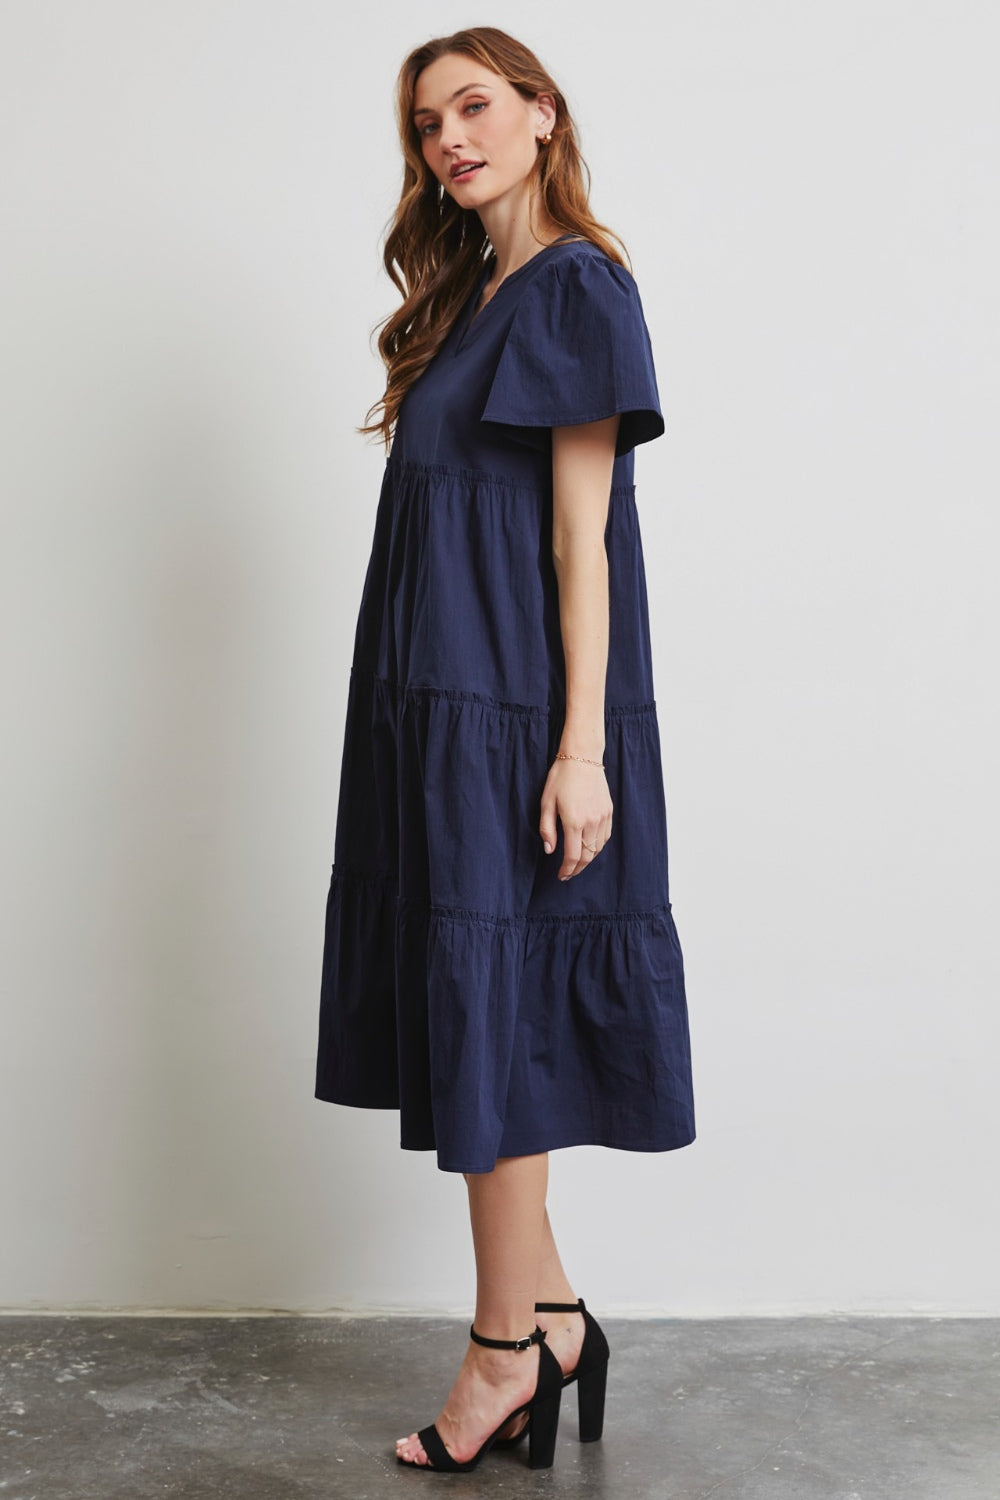 Women's Full Size Cotton Poplin Ruffled Tiered Midi Dress | Midi Dresses | Ro + Ivy